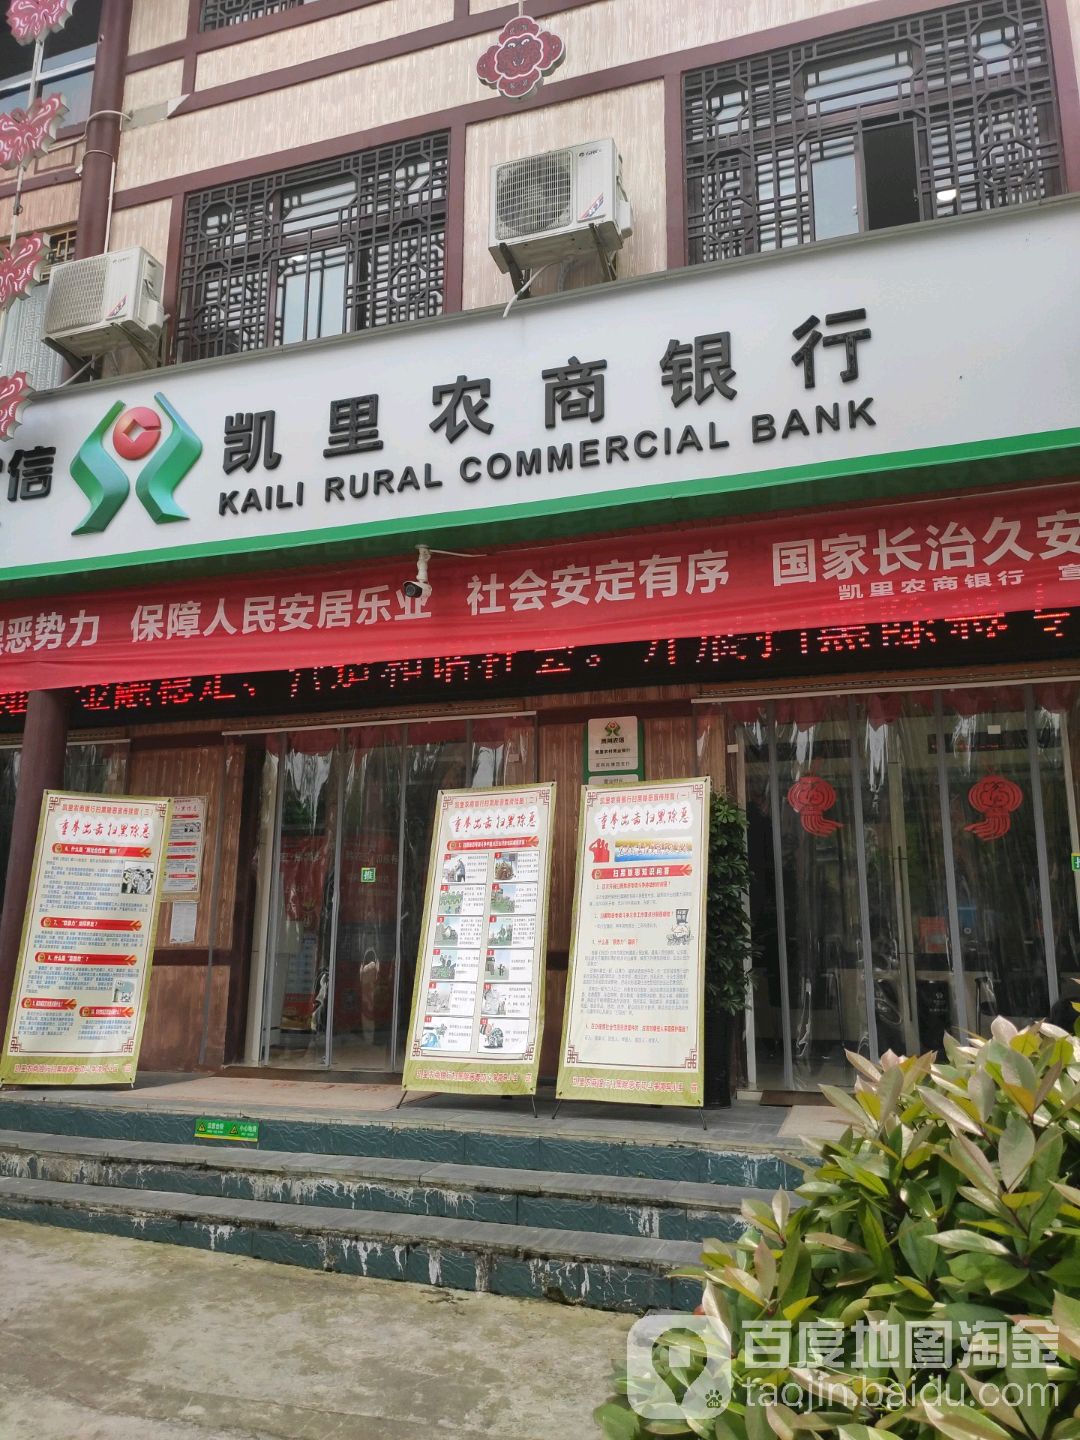 凯里农村商业银行(苗侗风情园支行)